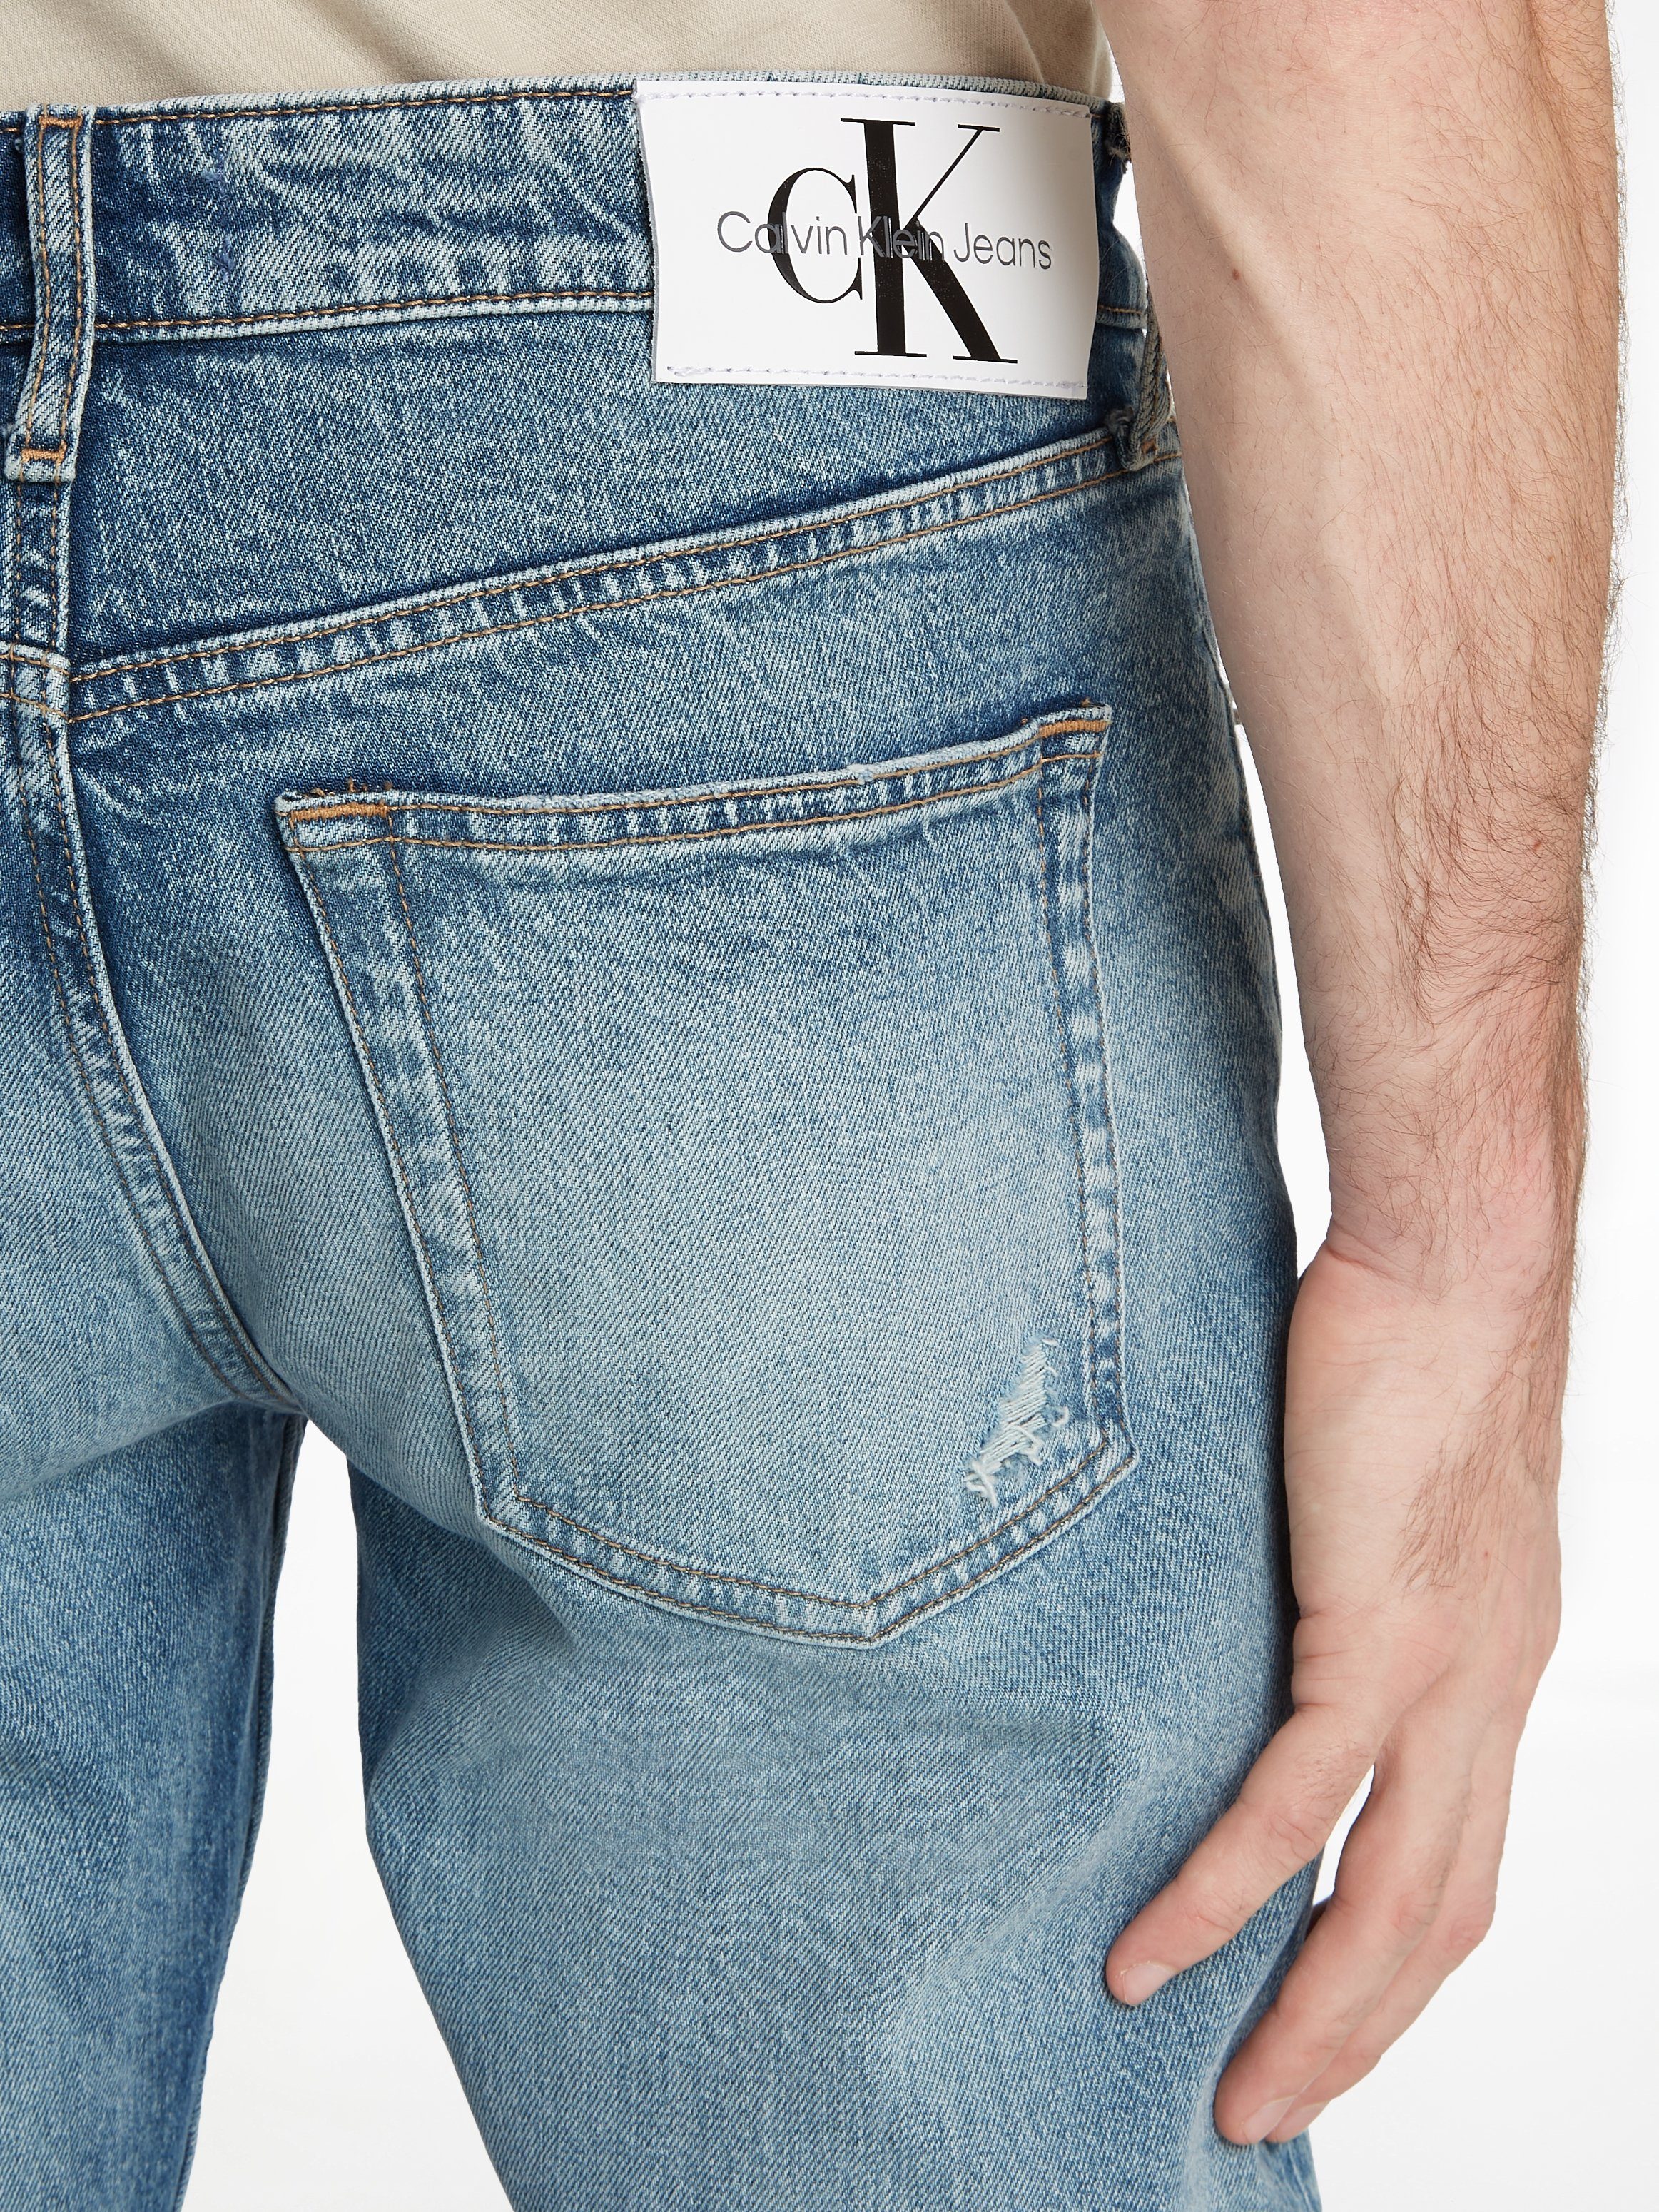 Leder-Badge mit TAPER 1A4 Denim SLIM Klein Jeans Tapered-fit-Jeans Calvin